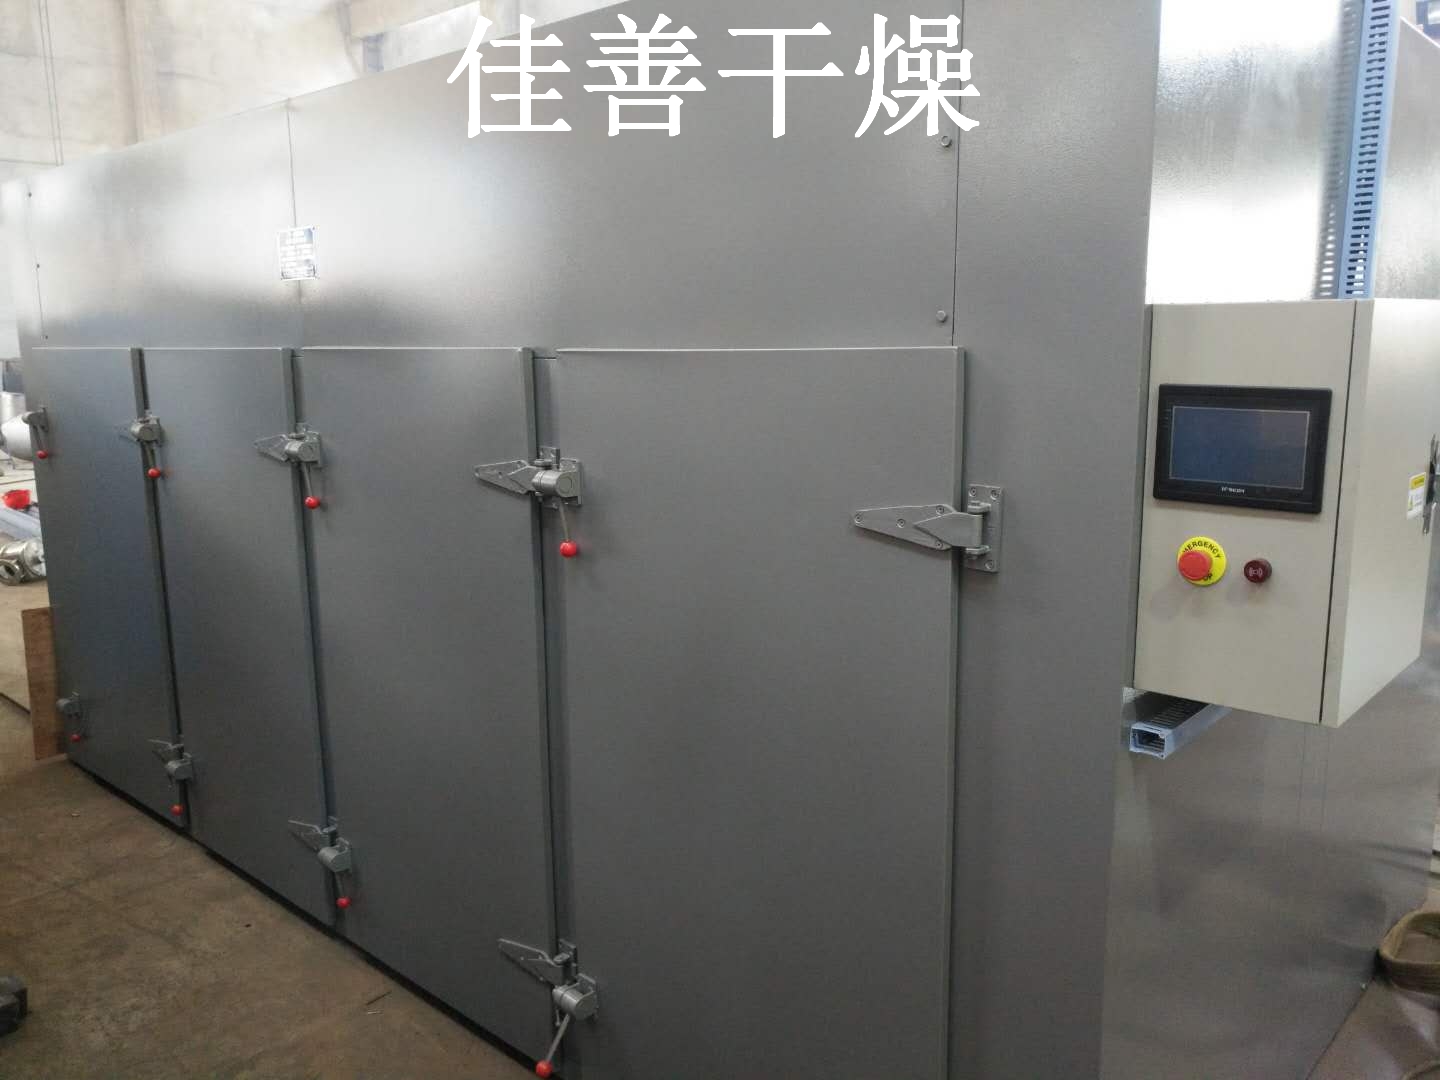 广州宠物食品工厂订购的CT-Ⅳ系列热风循环烘箱今天发货